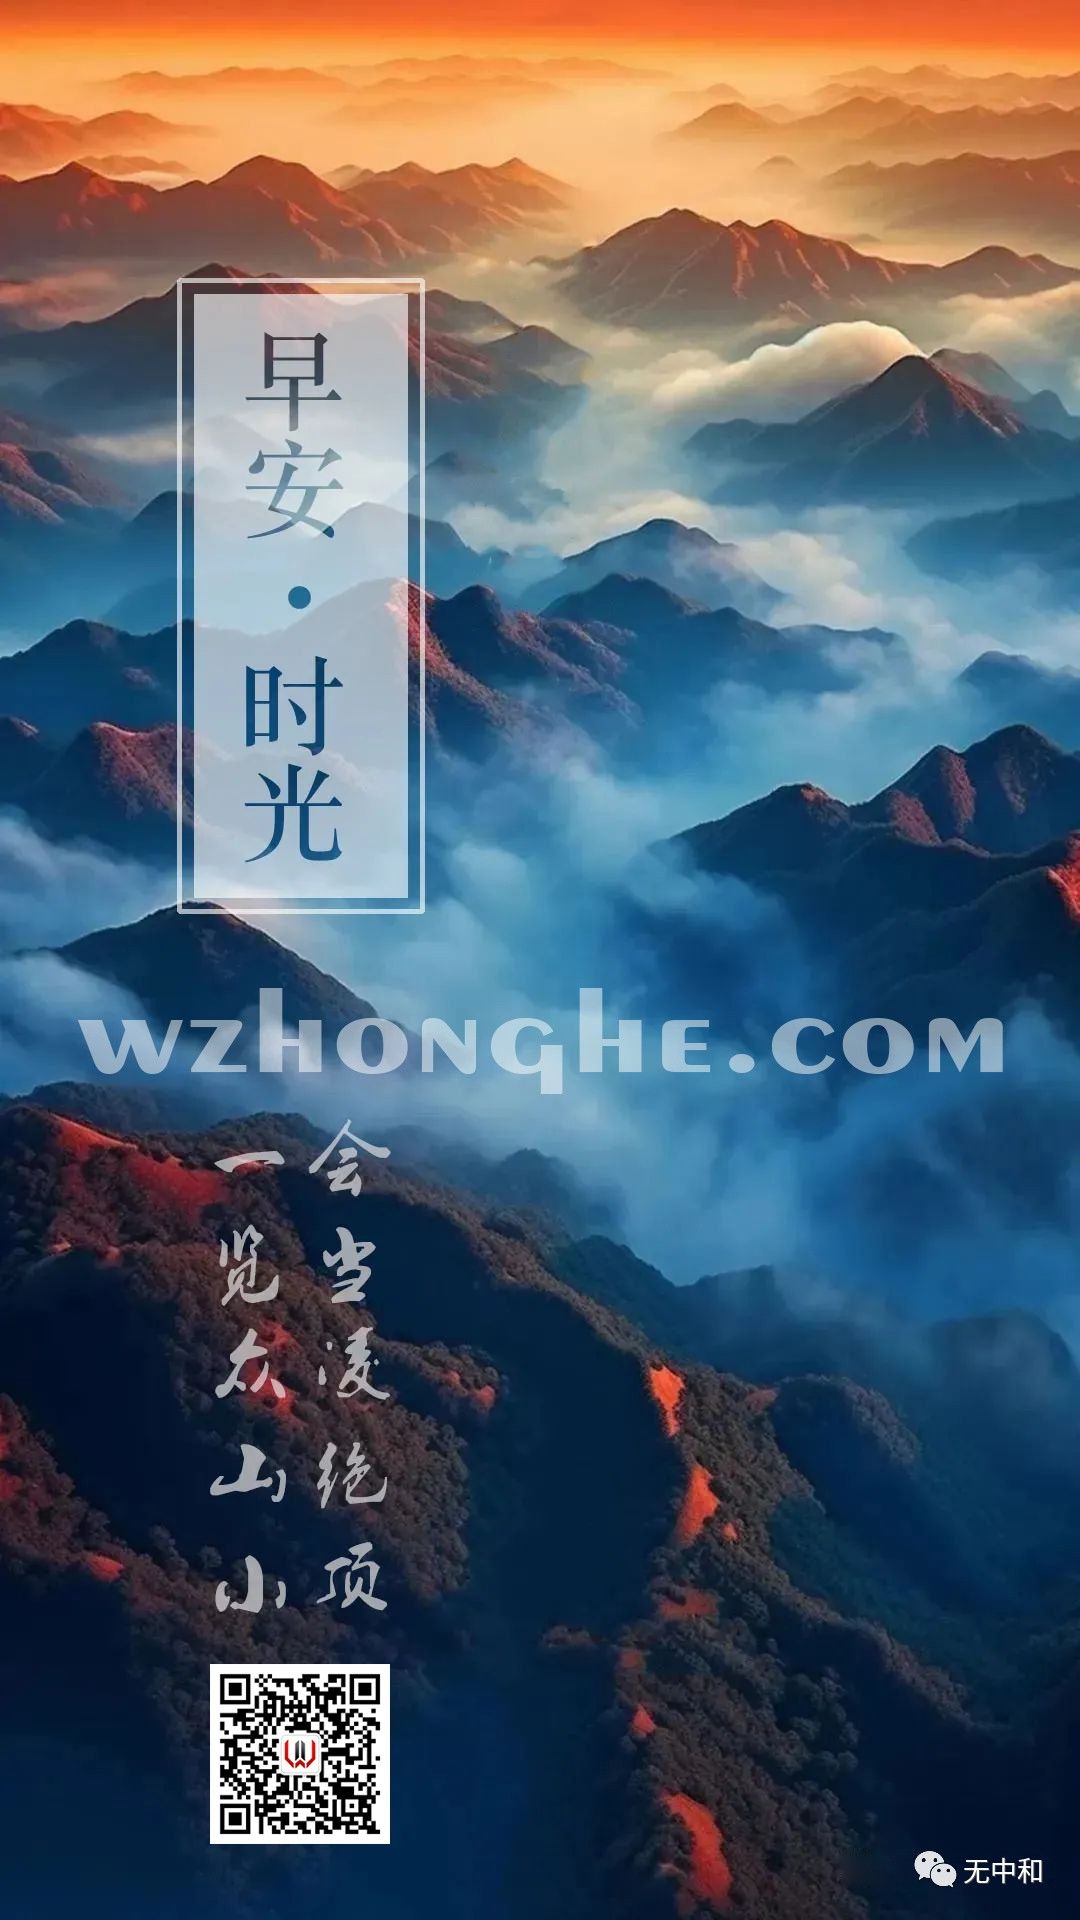 早安 - 无中和wzhonghe.com